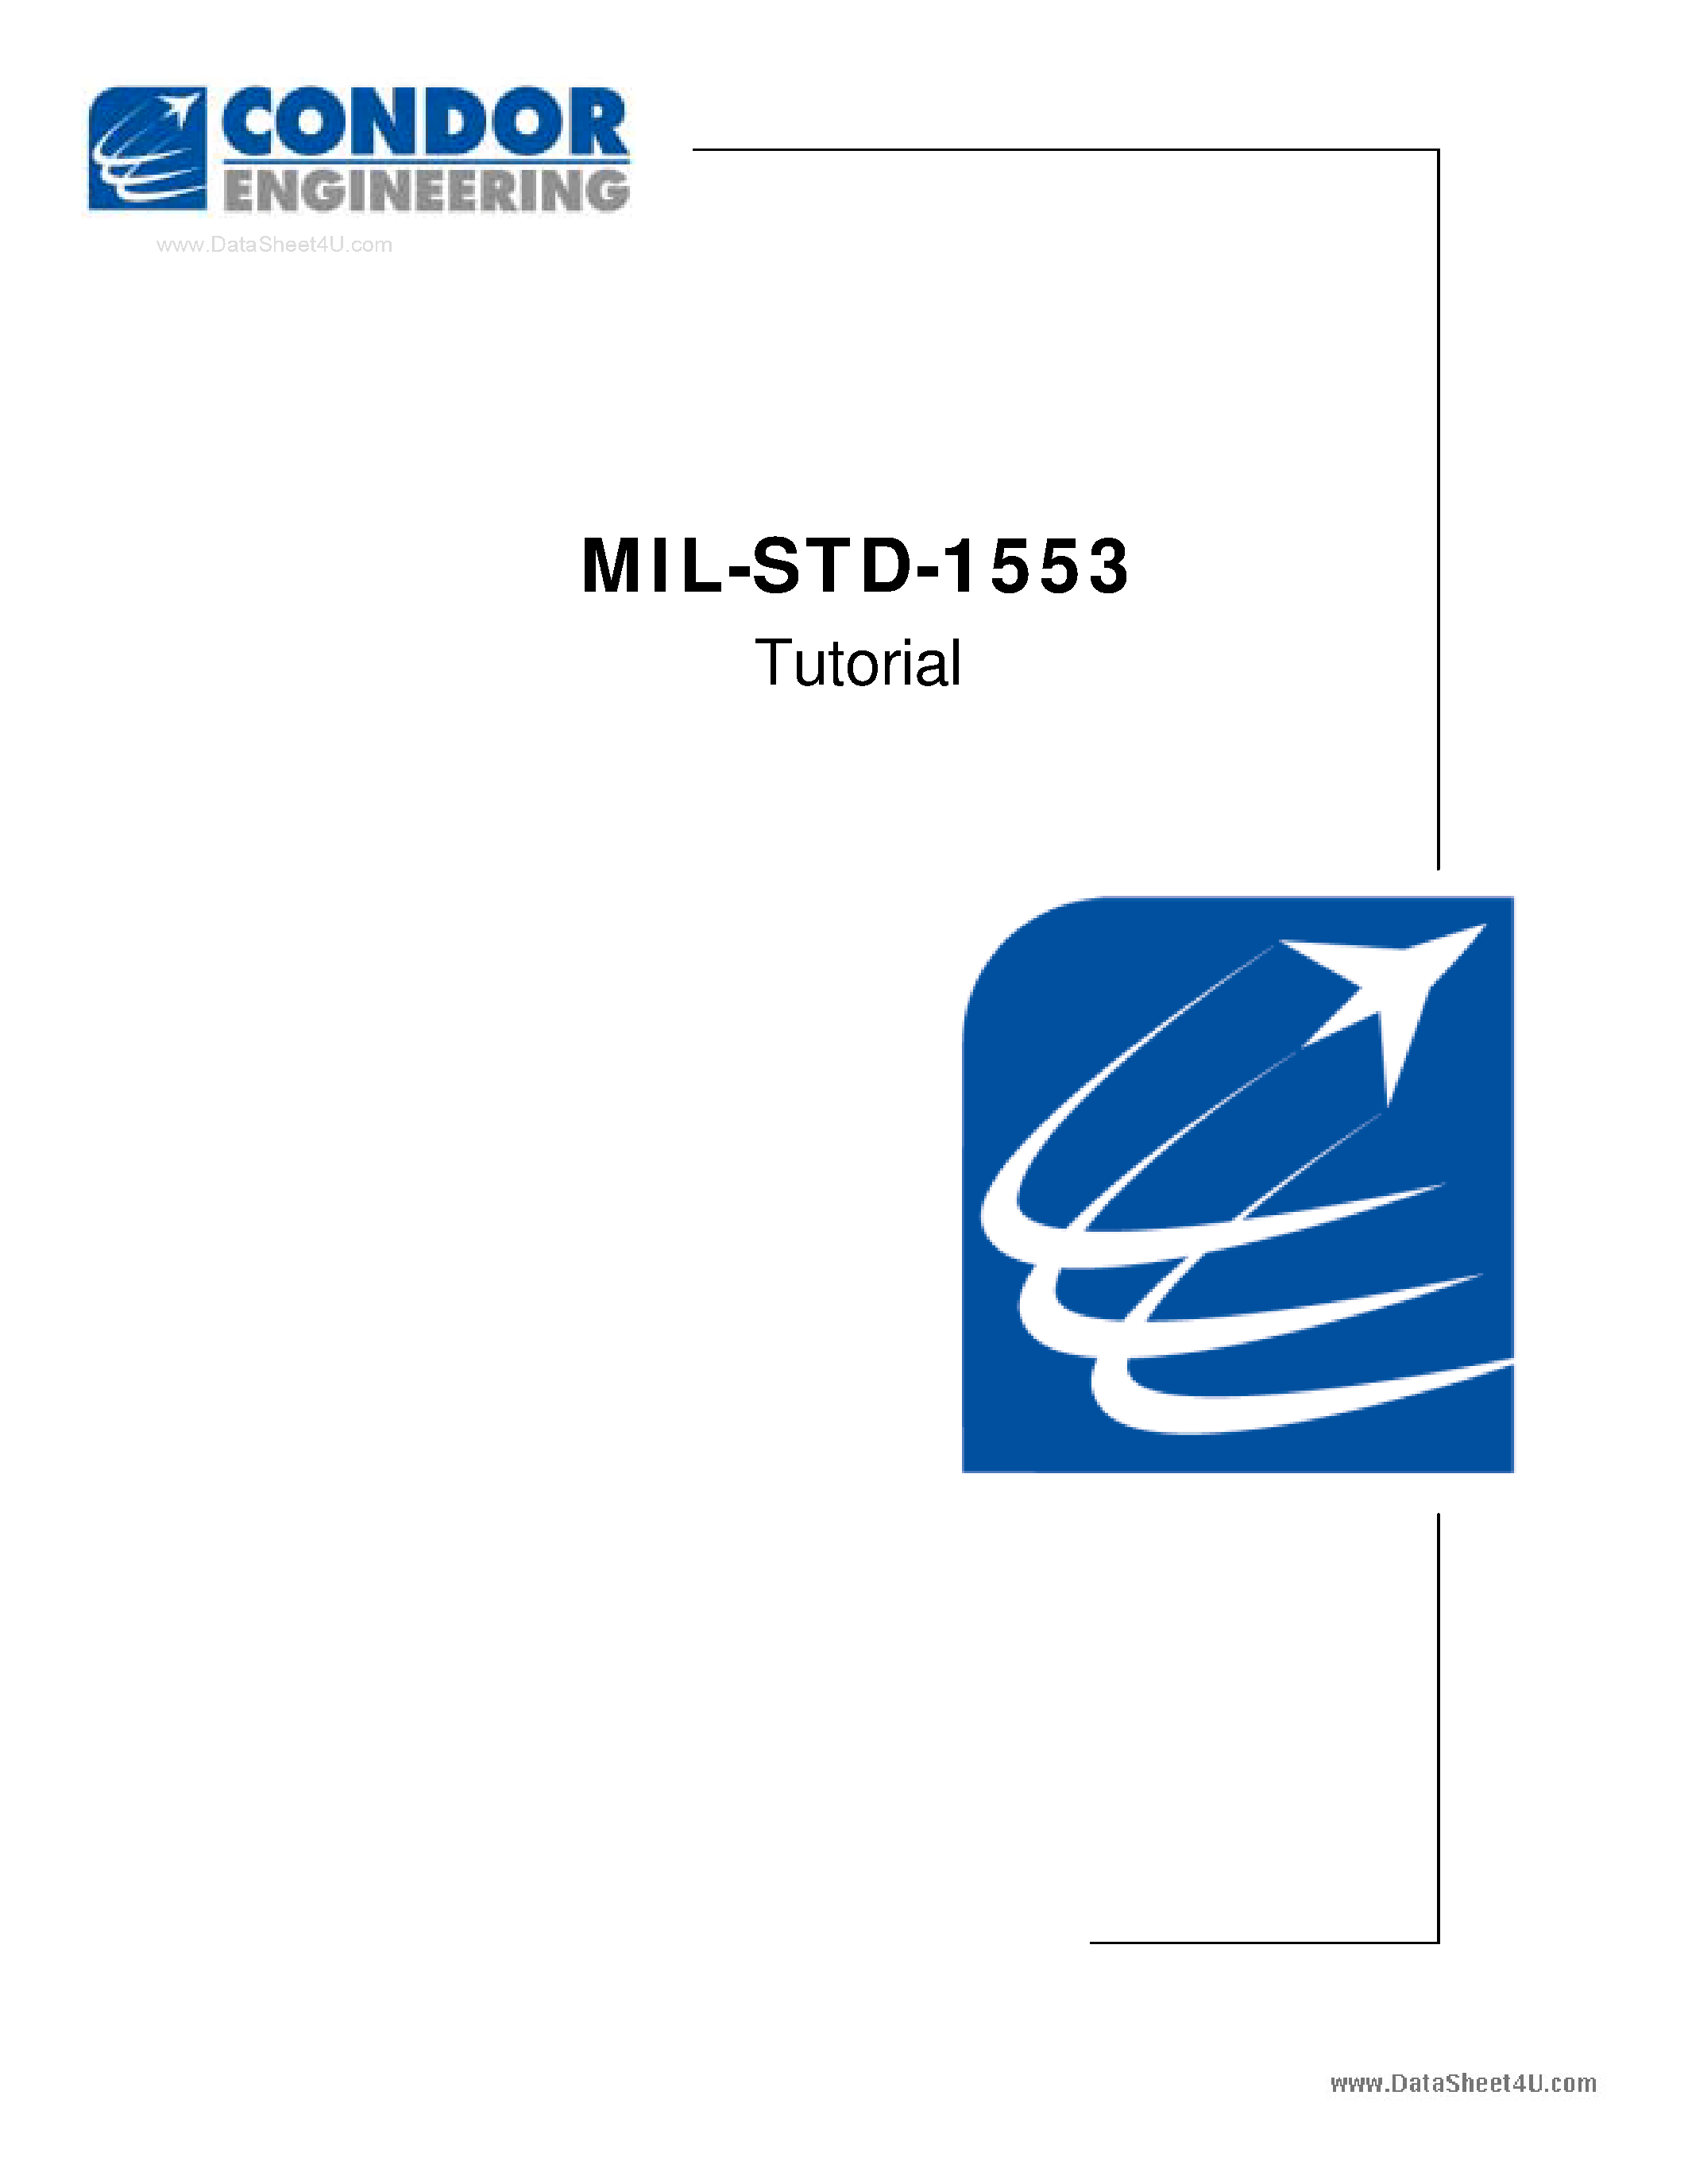 Даташит MIL-STD-1553 - Tutorial страница 1